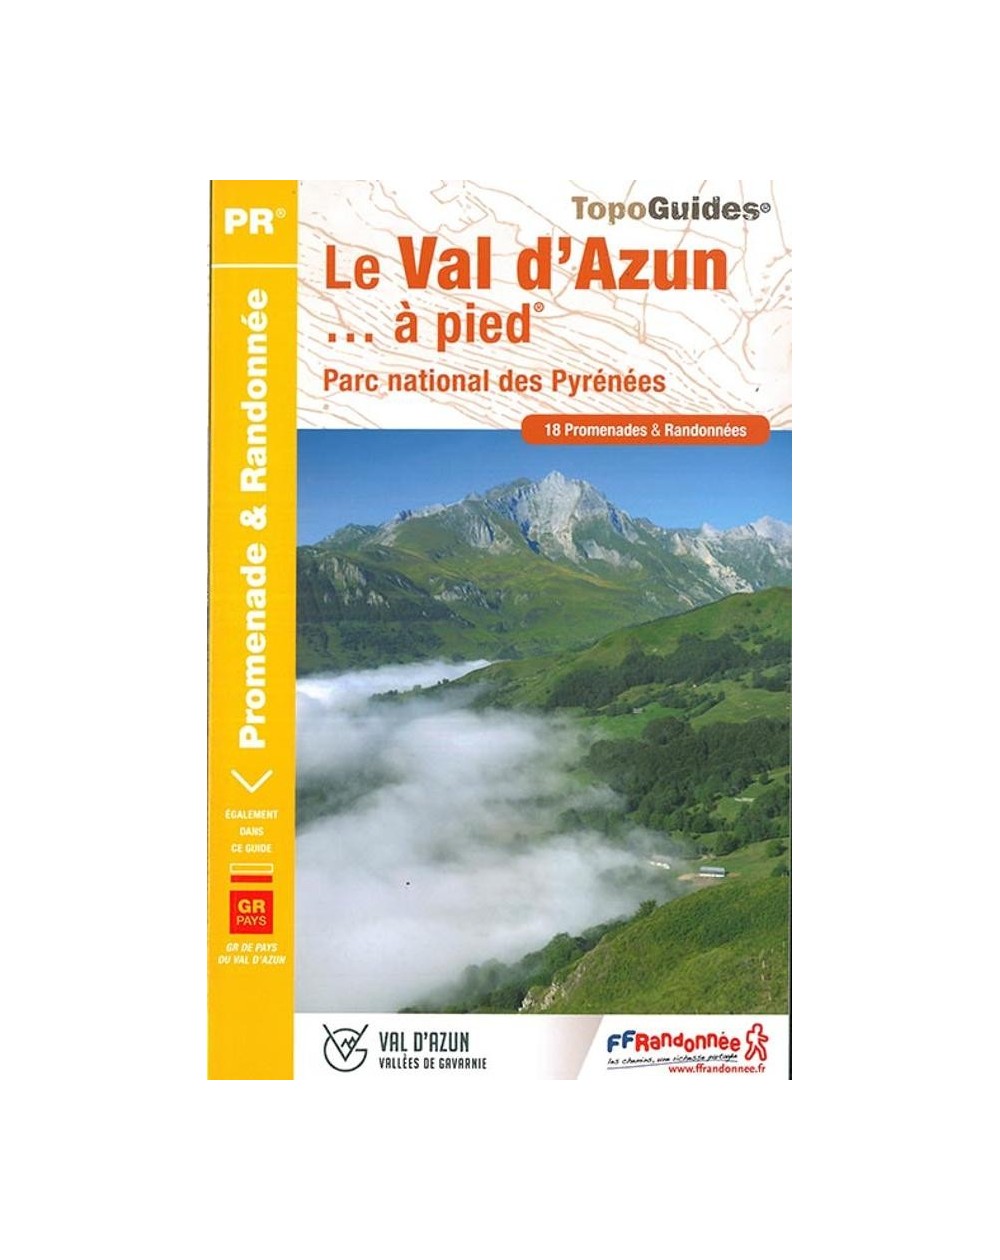 Parc national des Pyrénées - Le Val d'Azun | Topoguide FFRP